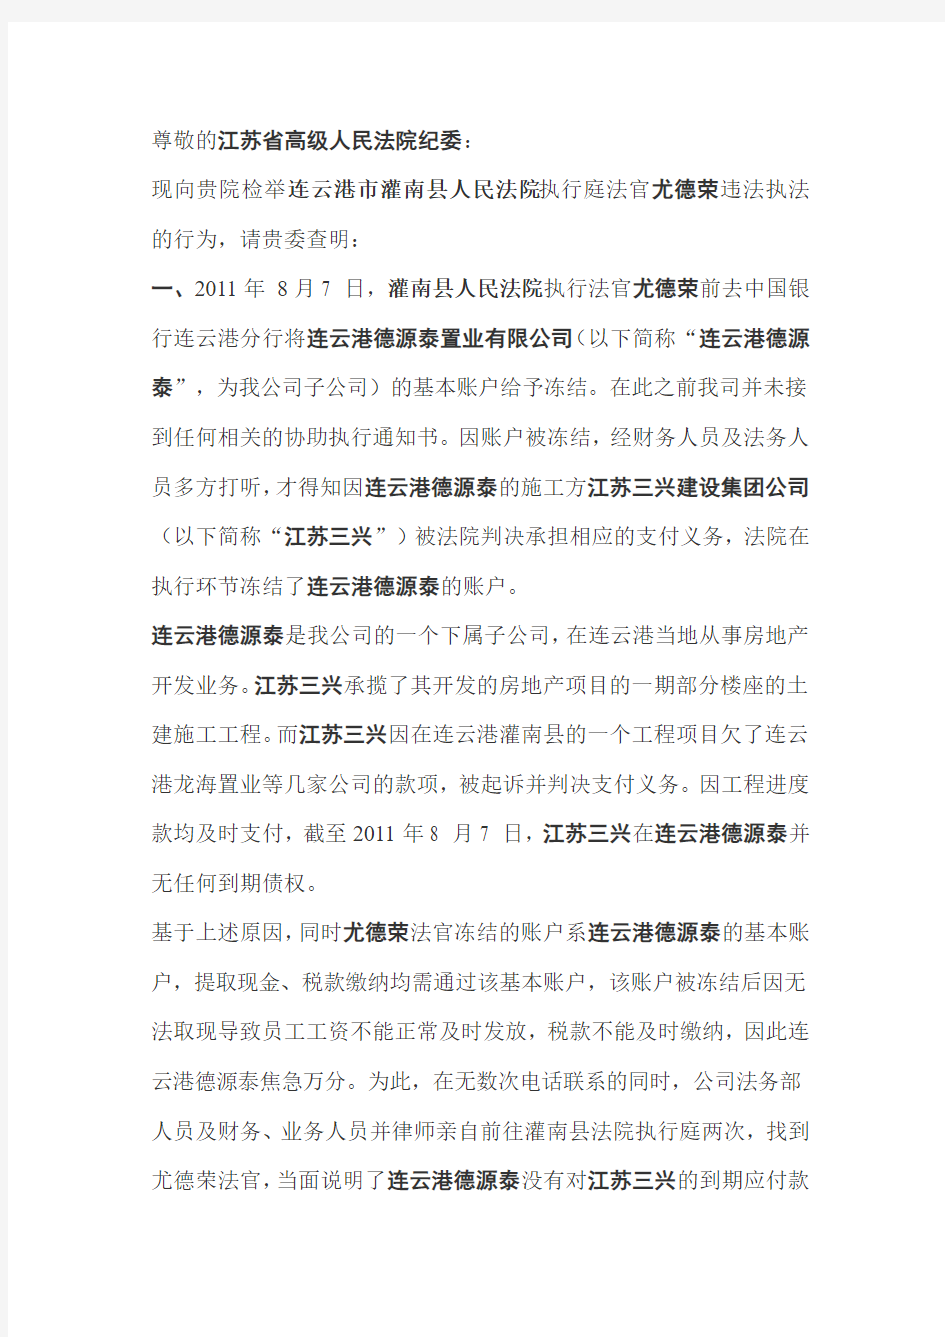 关于连云港市灌南县执行法官尤德荣违法违纪执行案件的检举信